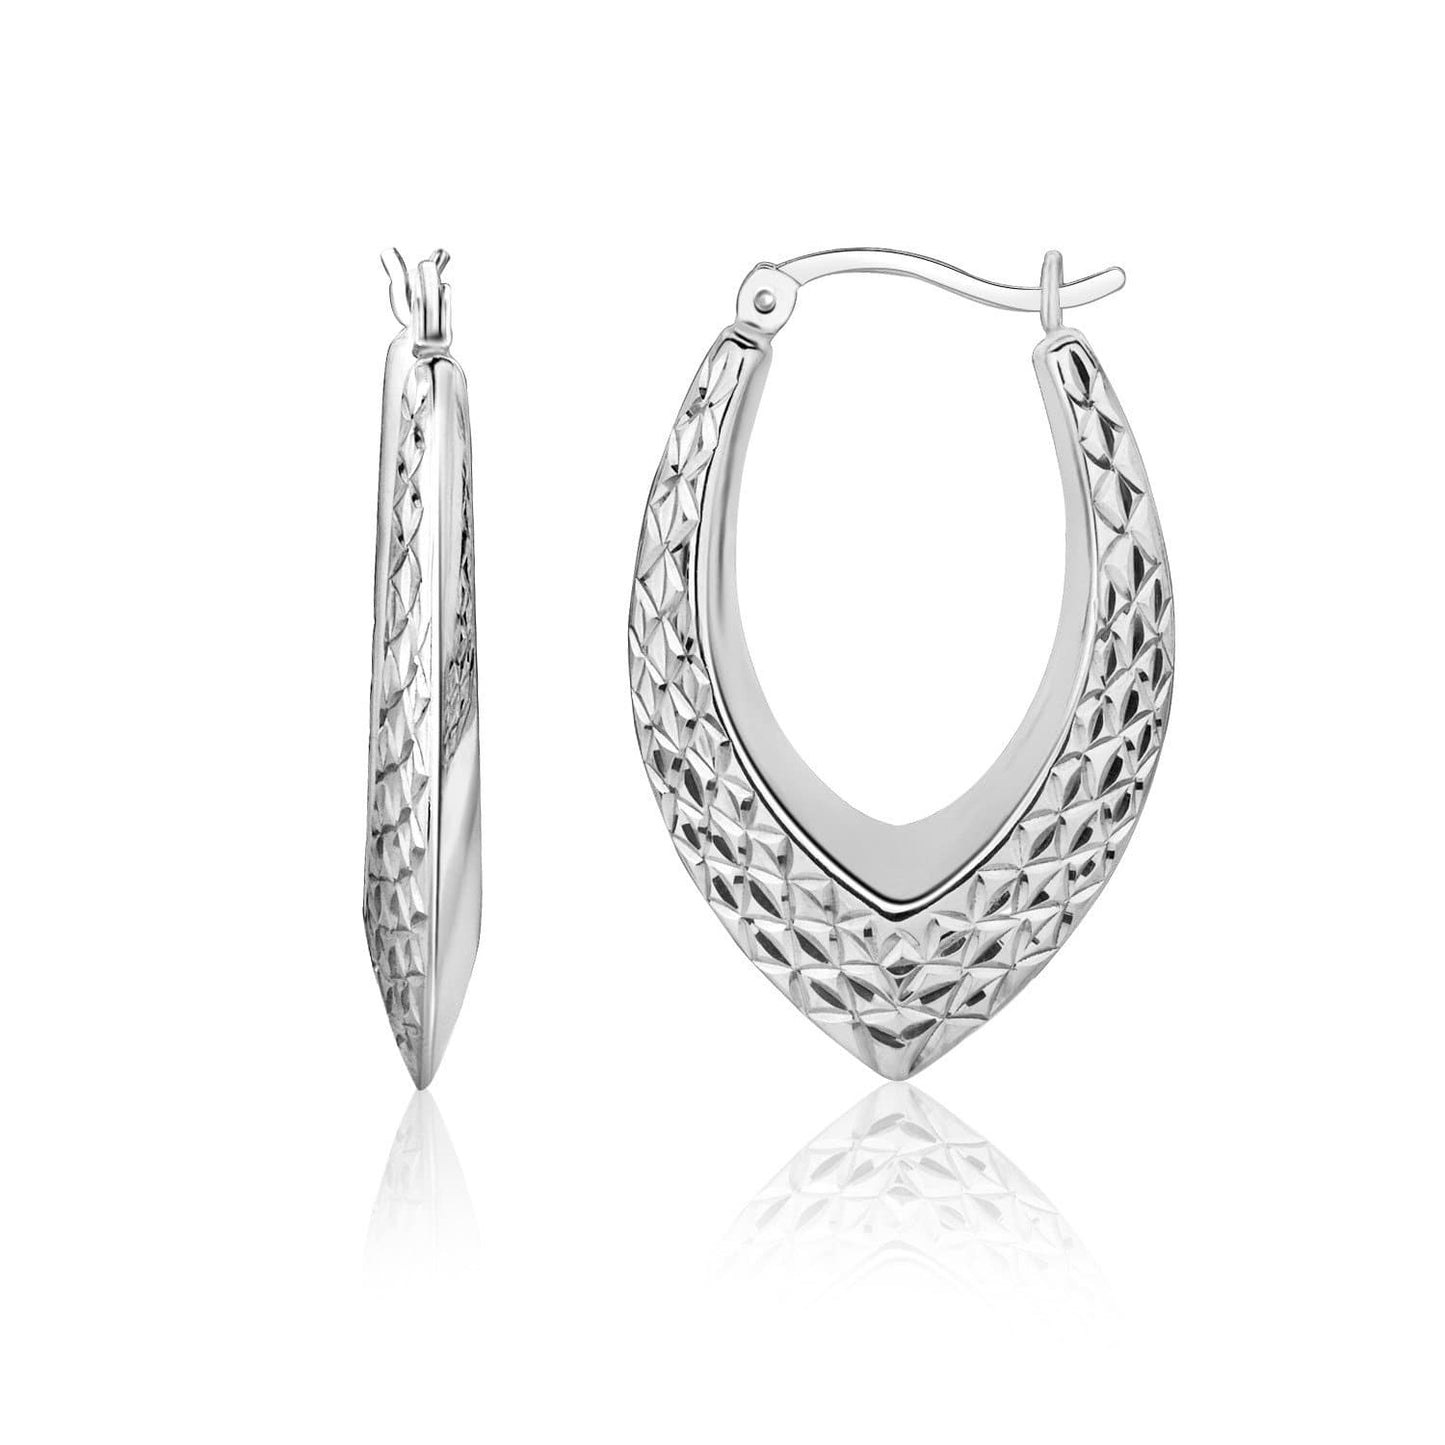 Texture Hoop Earrings in Sterling Silver